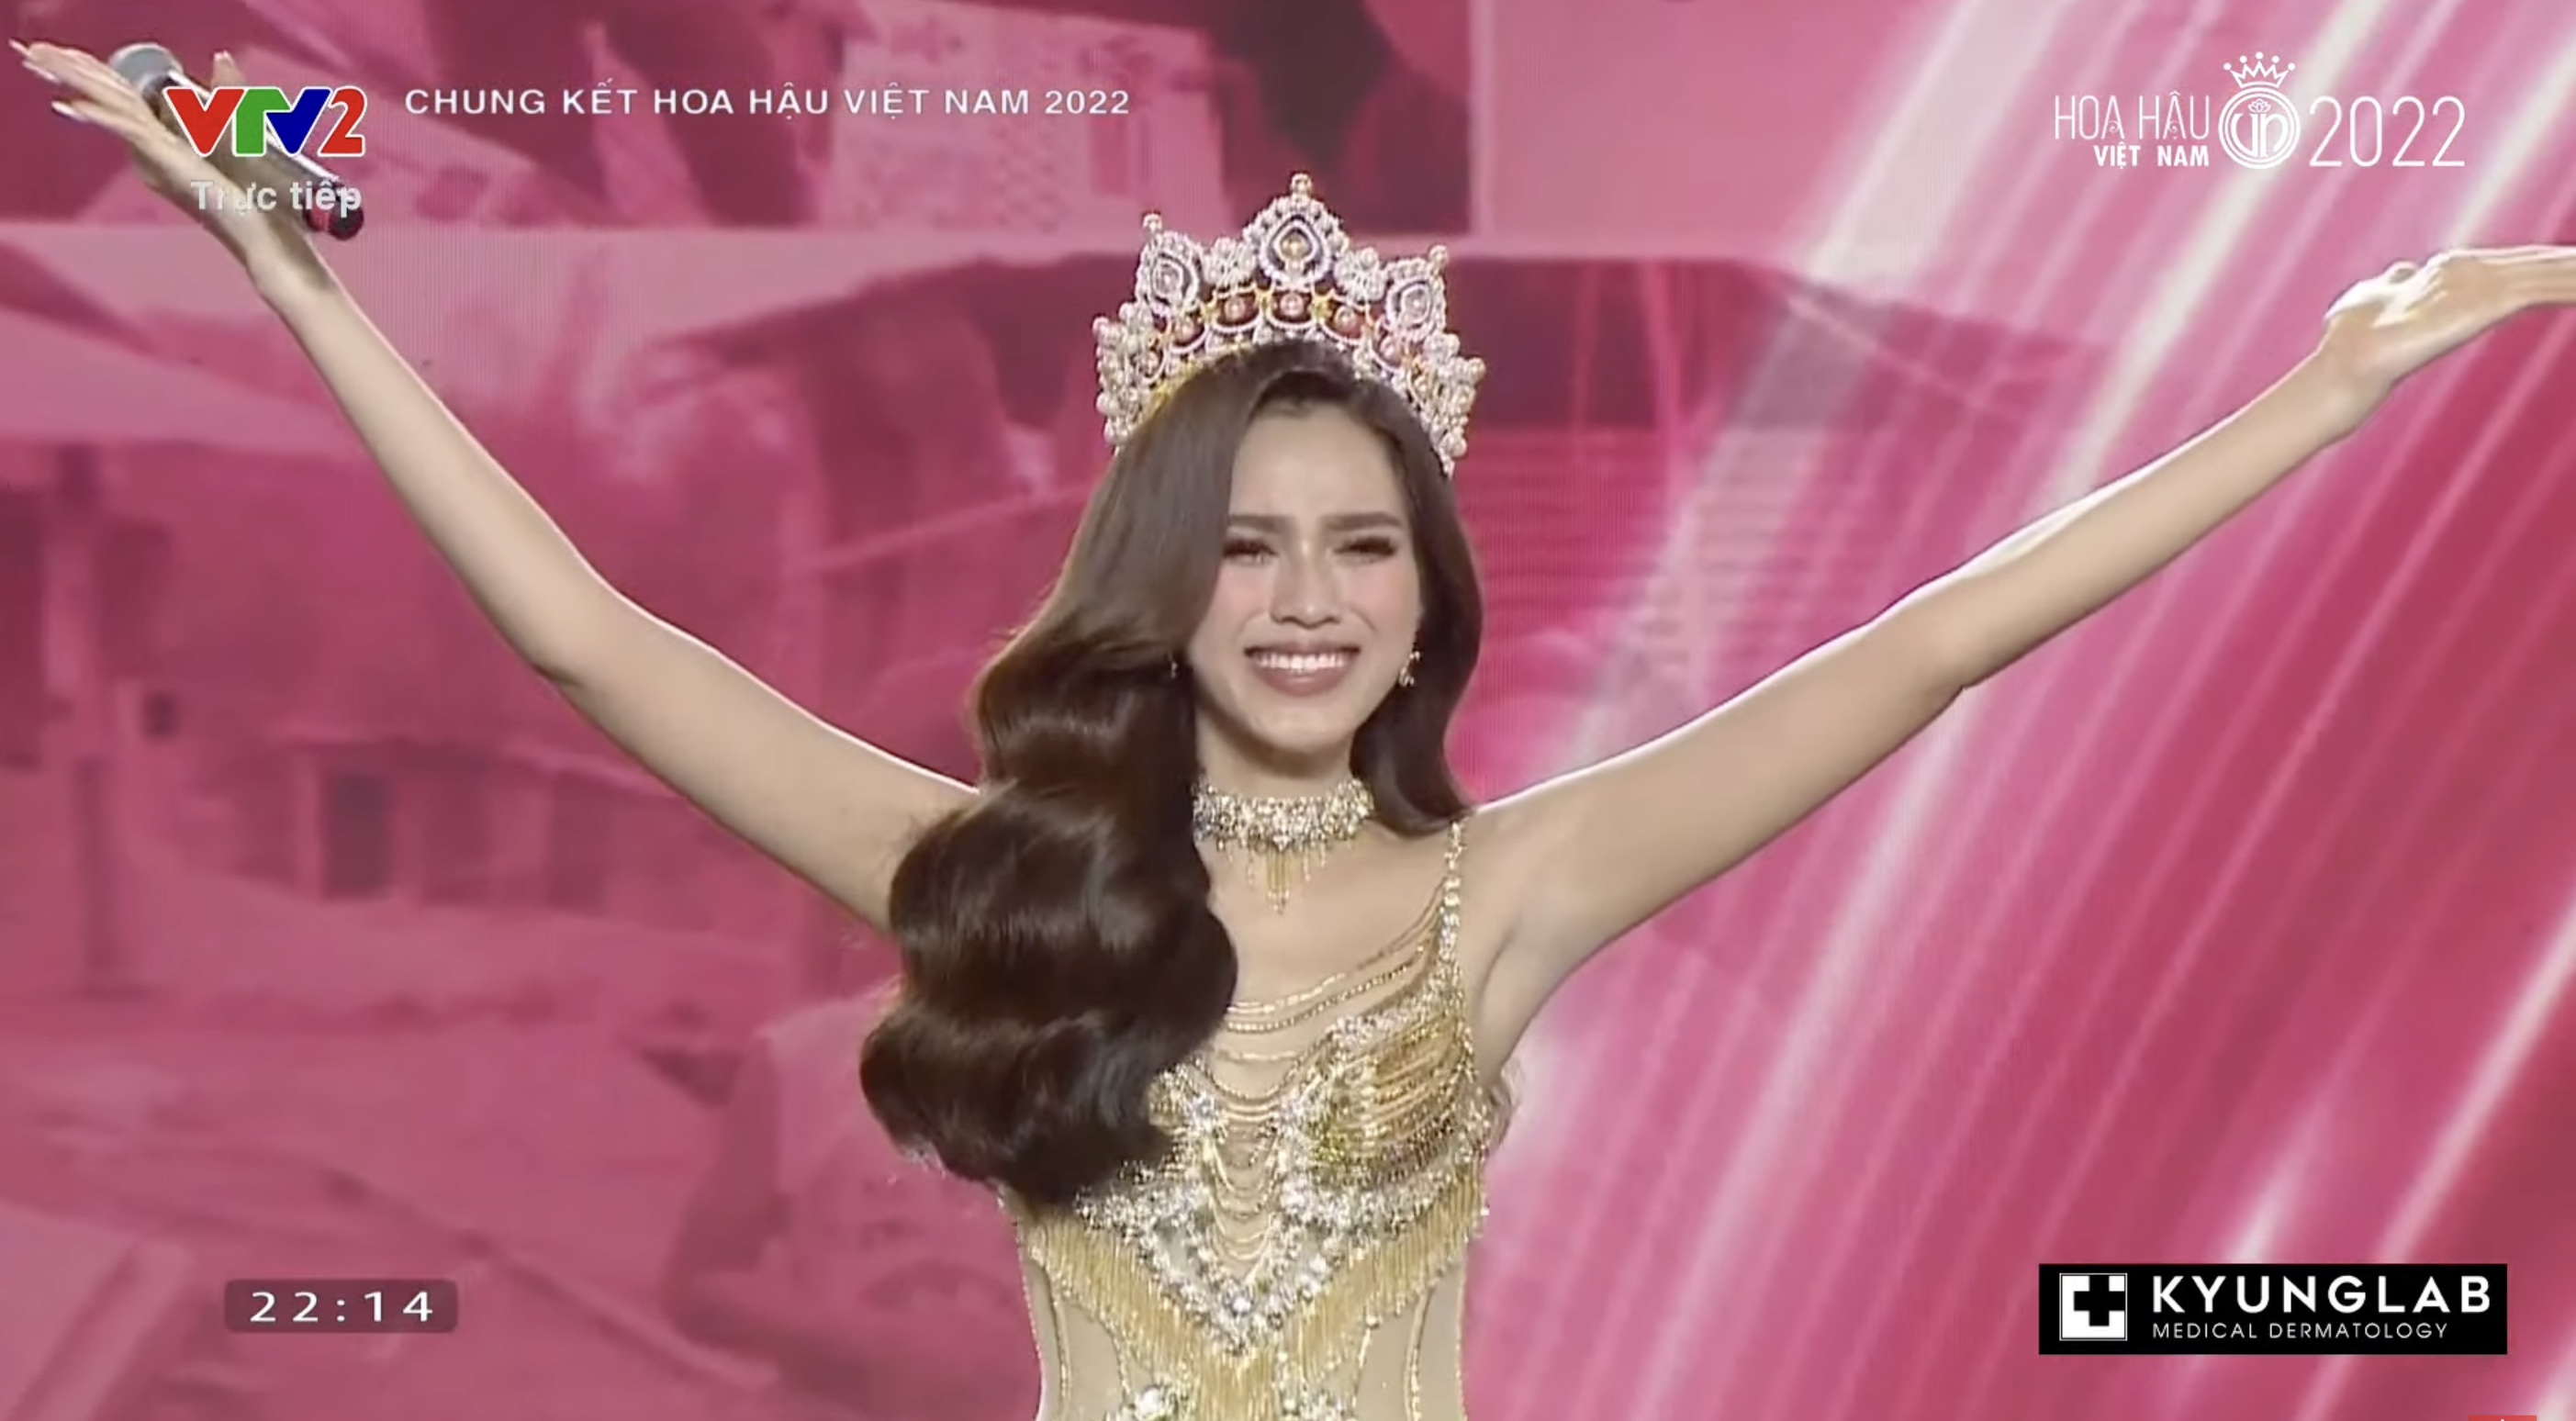 Chung kết Hoa hậu Việt Nam 2022: Tân Hoa hậu chính thức gọi tên Huỳnh Thị Thanh Thuỷ - 15